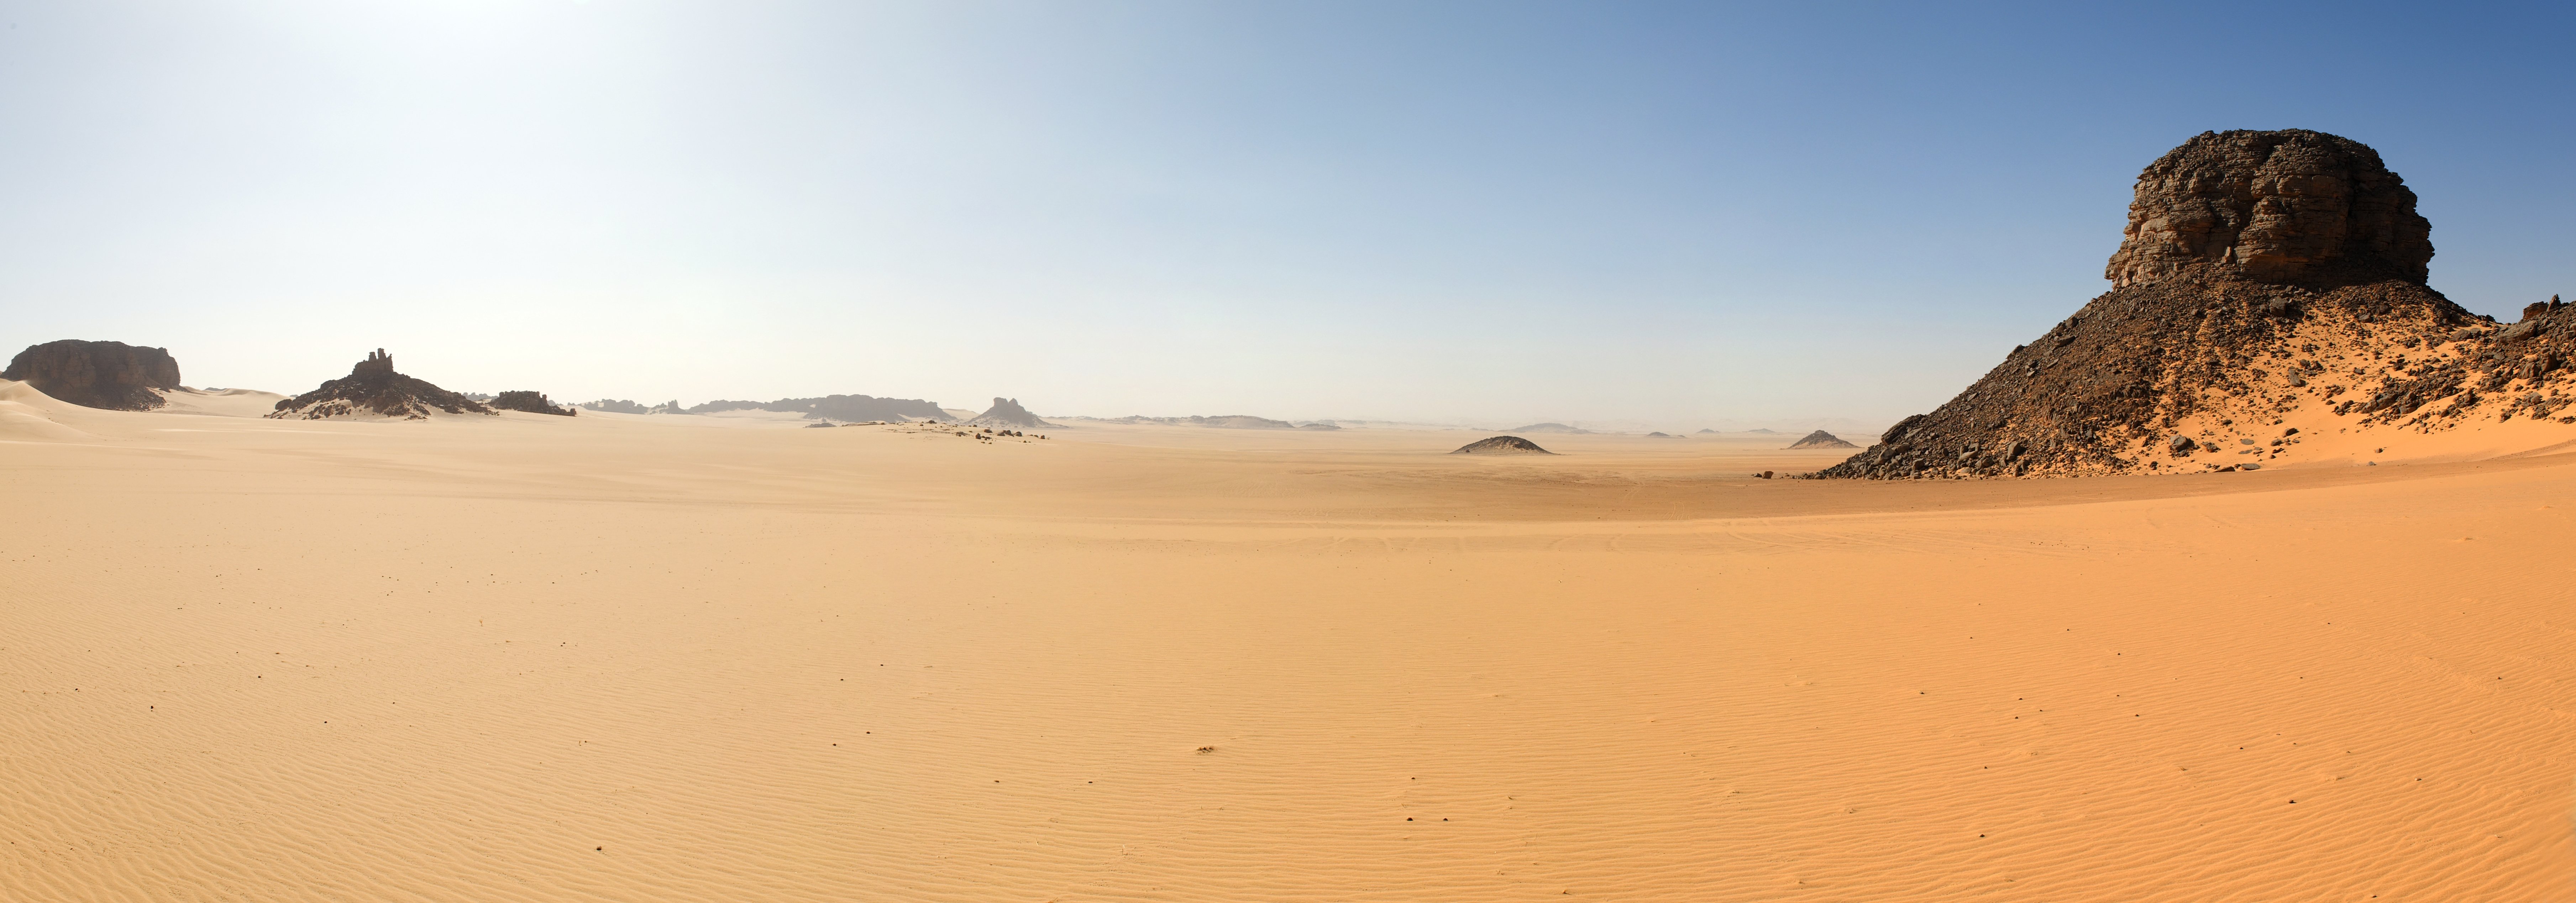 Panoramic desert wallpaper